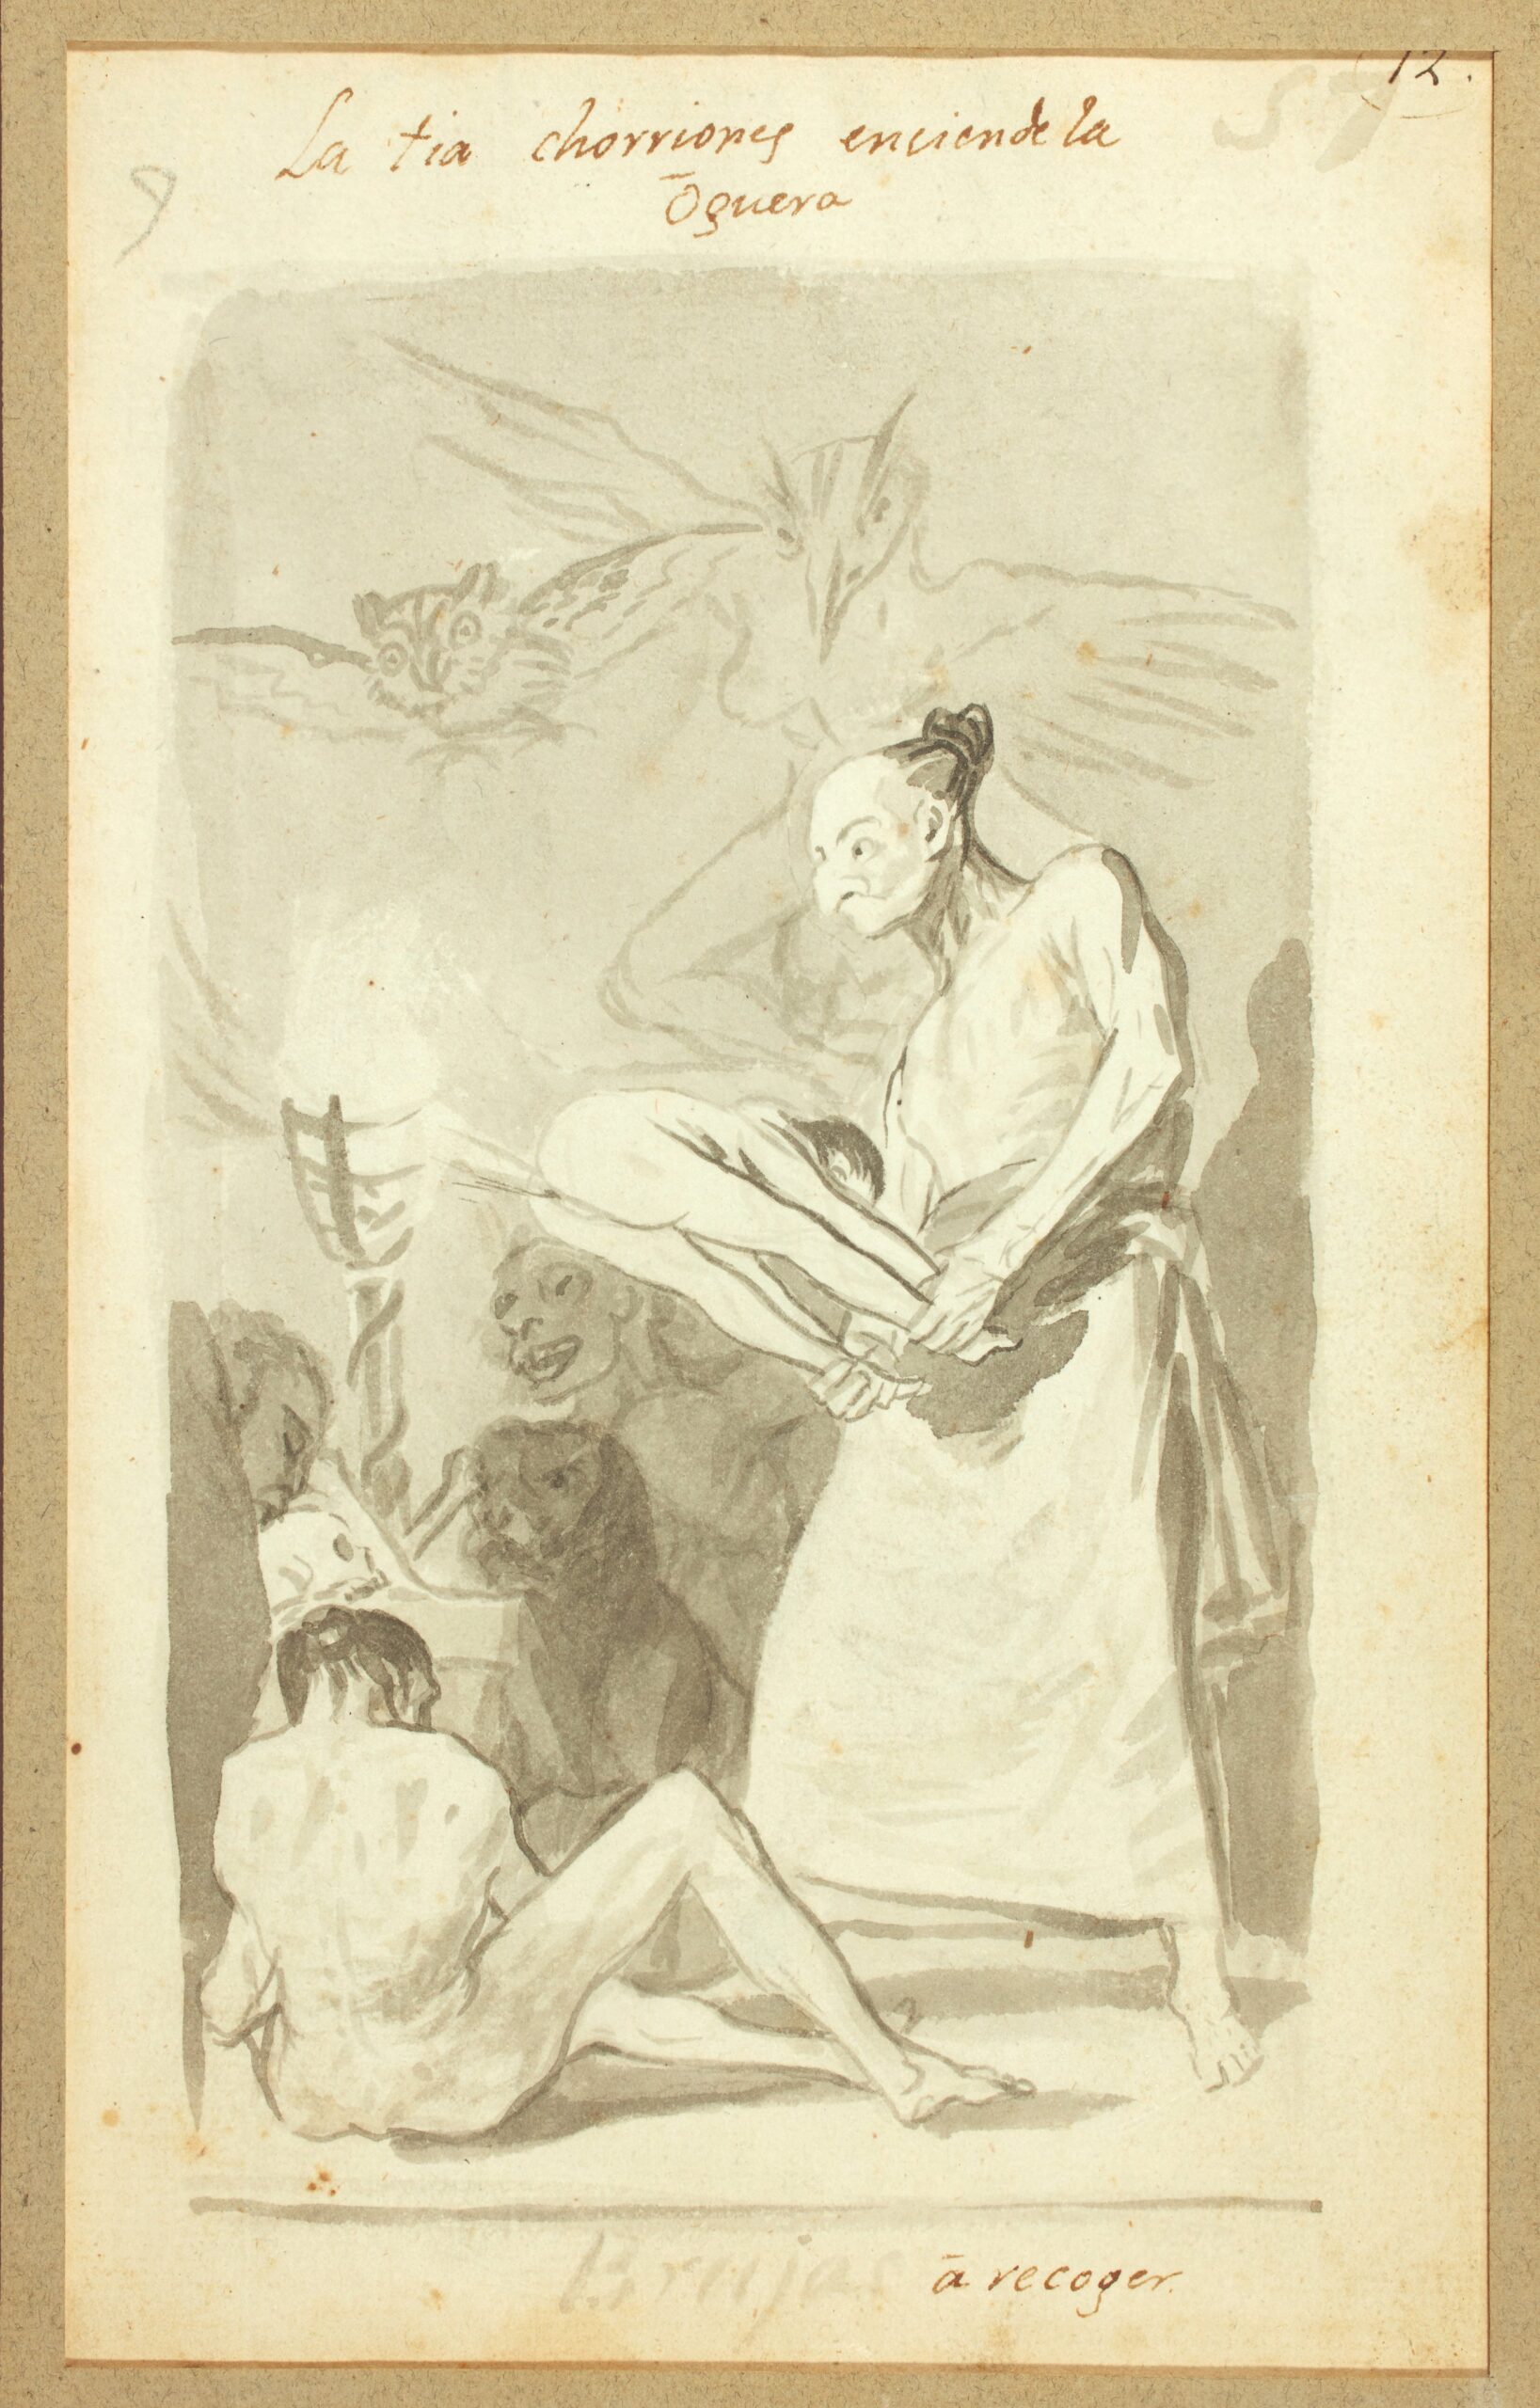 Francisco José de Goya y Lucientes (1746-1828), verso : La tia Chorriones enciende la oguera (La tante Chorriones allume le feu), 1796-1797. Lavis de sépia, 23 x 14 cm. Estimé : 800 000/1 000 000 €. Préempté 1 905 000 € (frais inclus) par le musée du Louvre. © DR